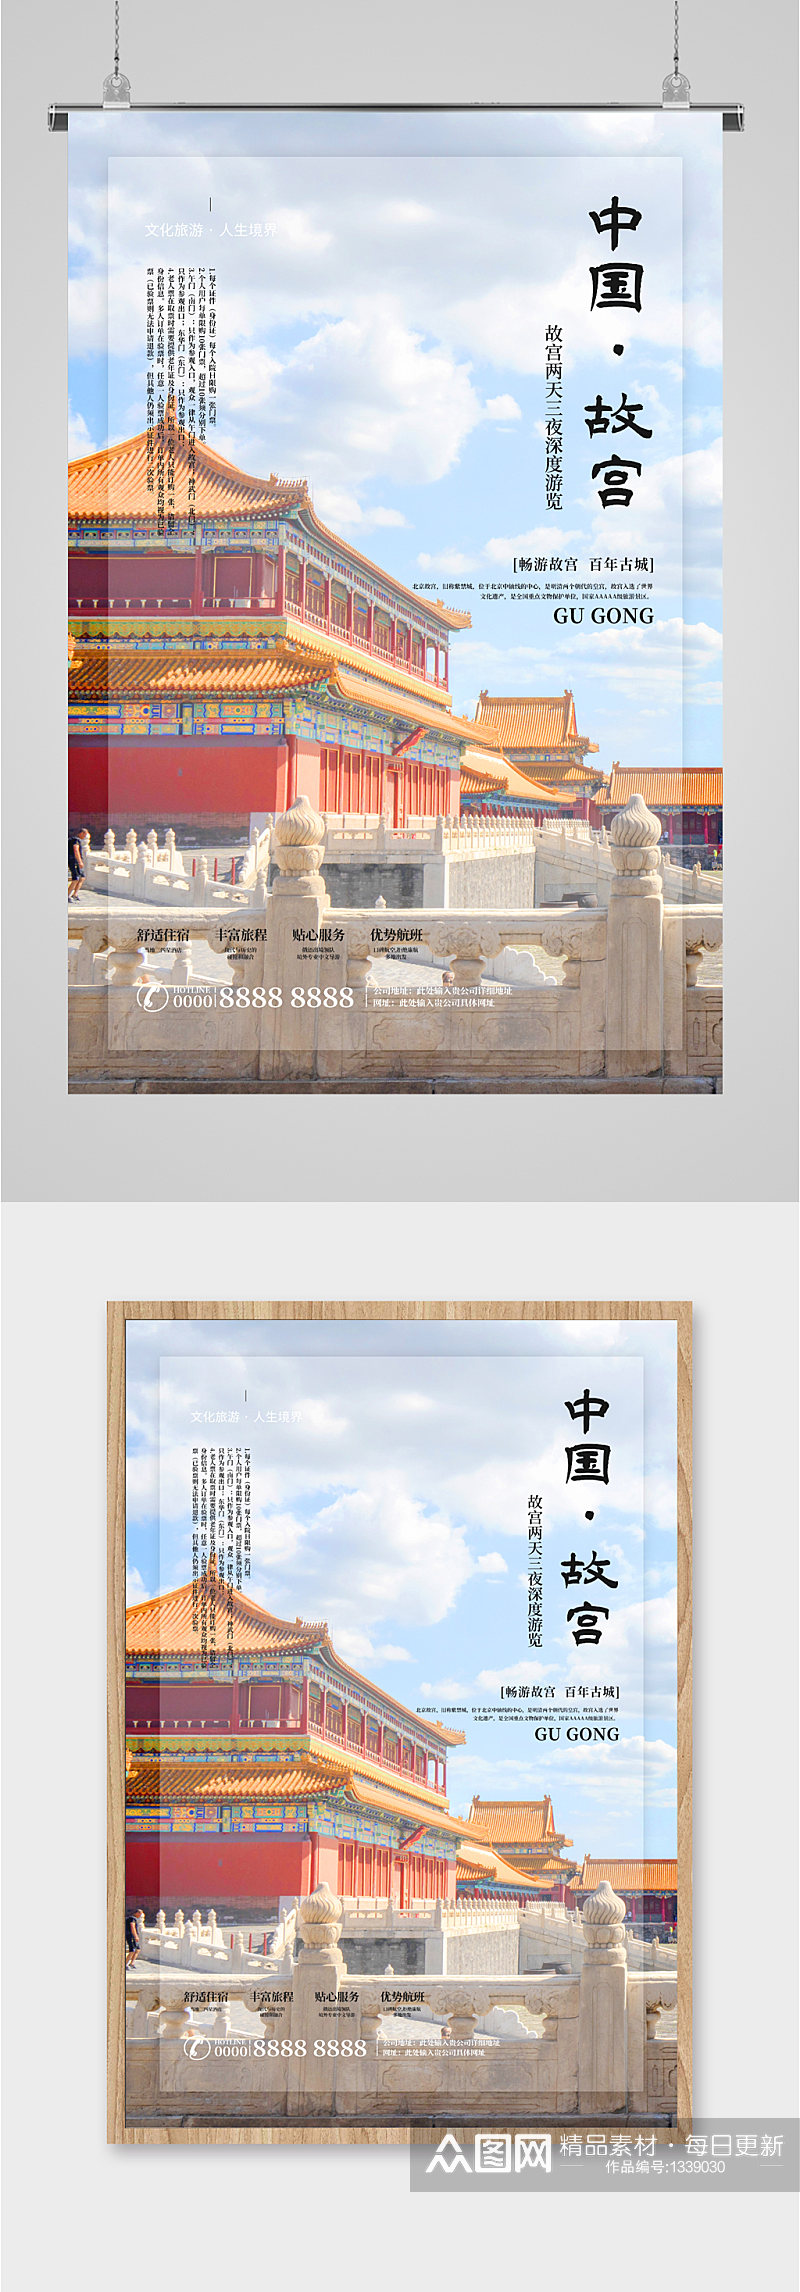 中国故宫旅游旅行社海报素材